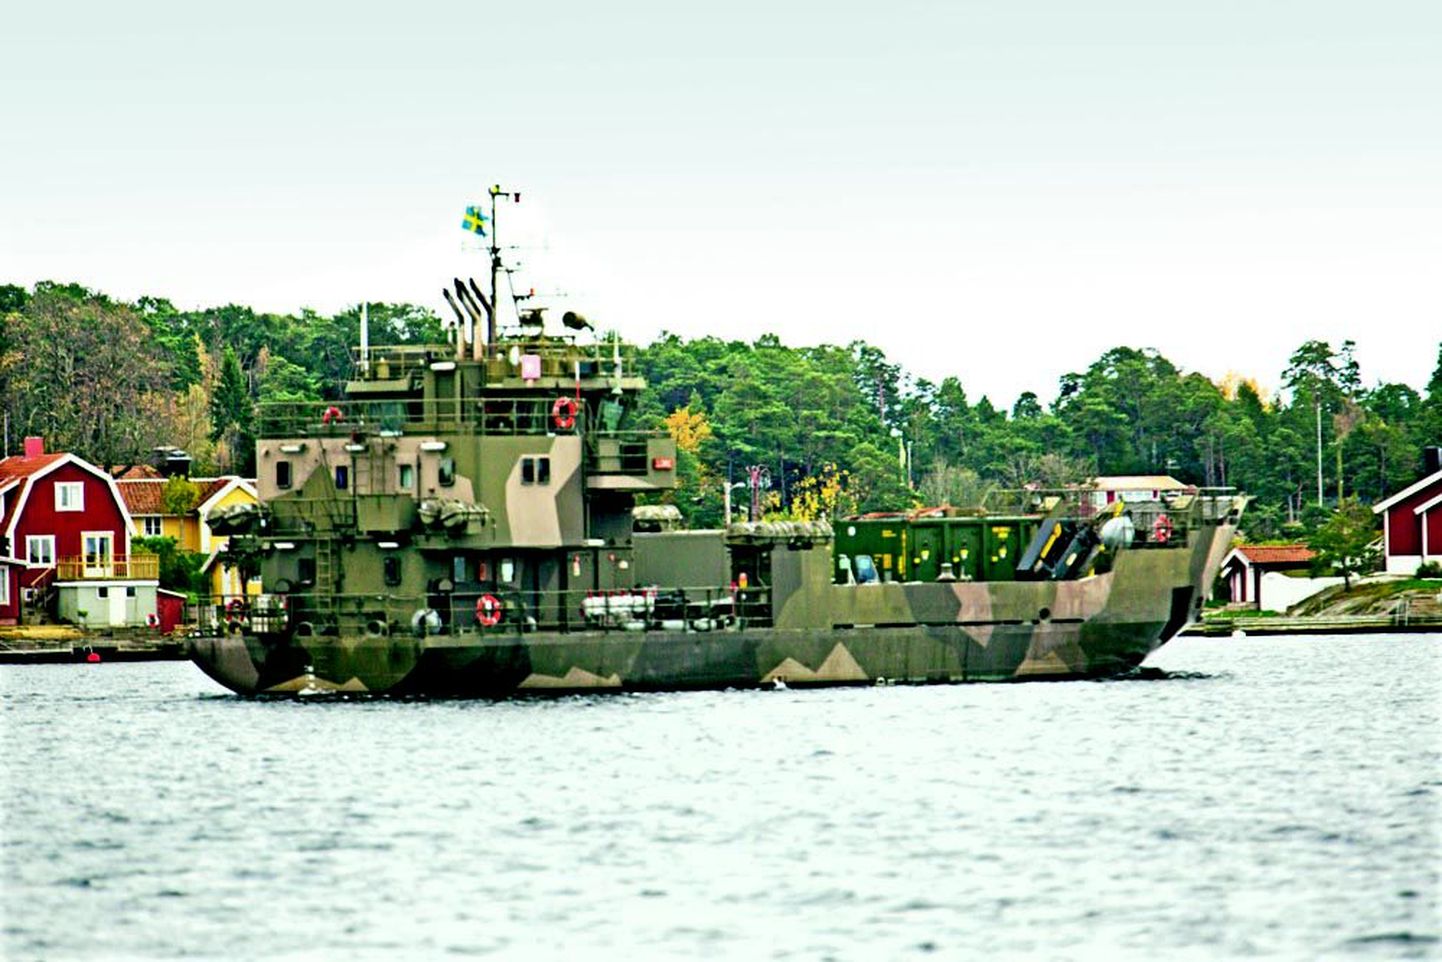 Rootsi mereväe alus otsimas väidetavat allveelaeva Dalarö linna lähistel, Stockholmist 40 kilomeetri kaugusel.